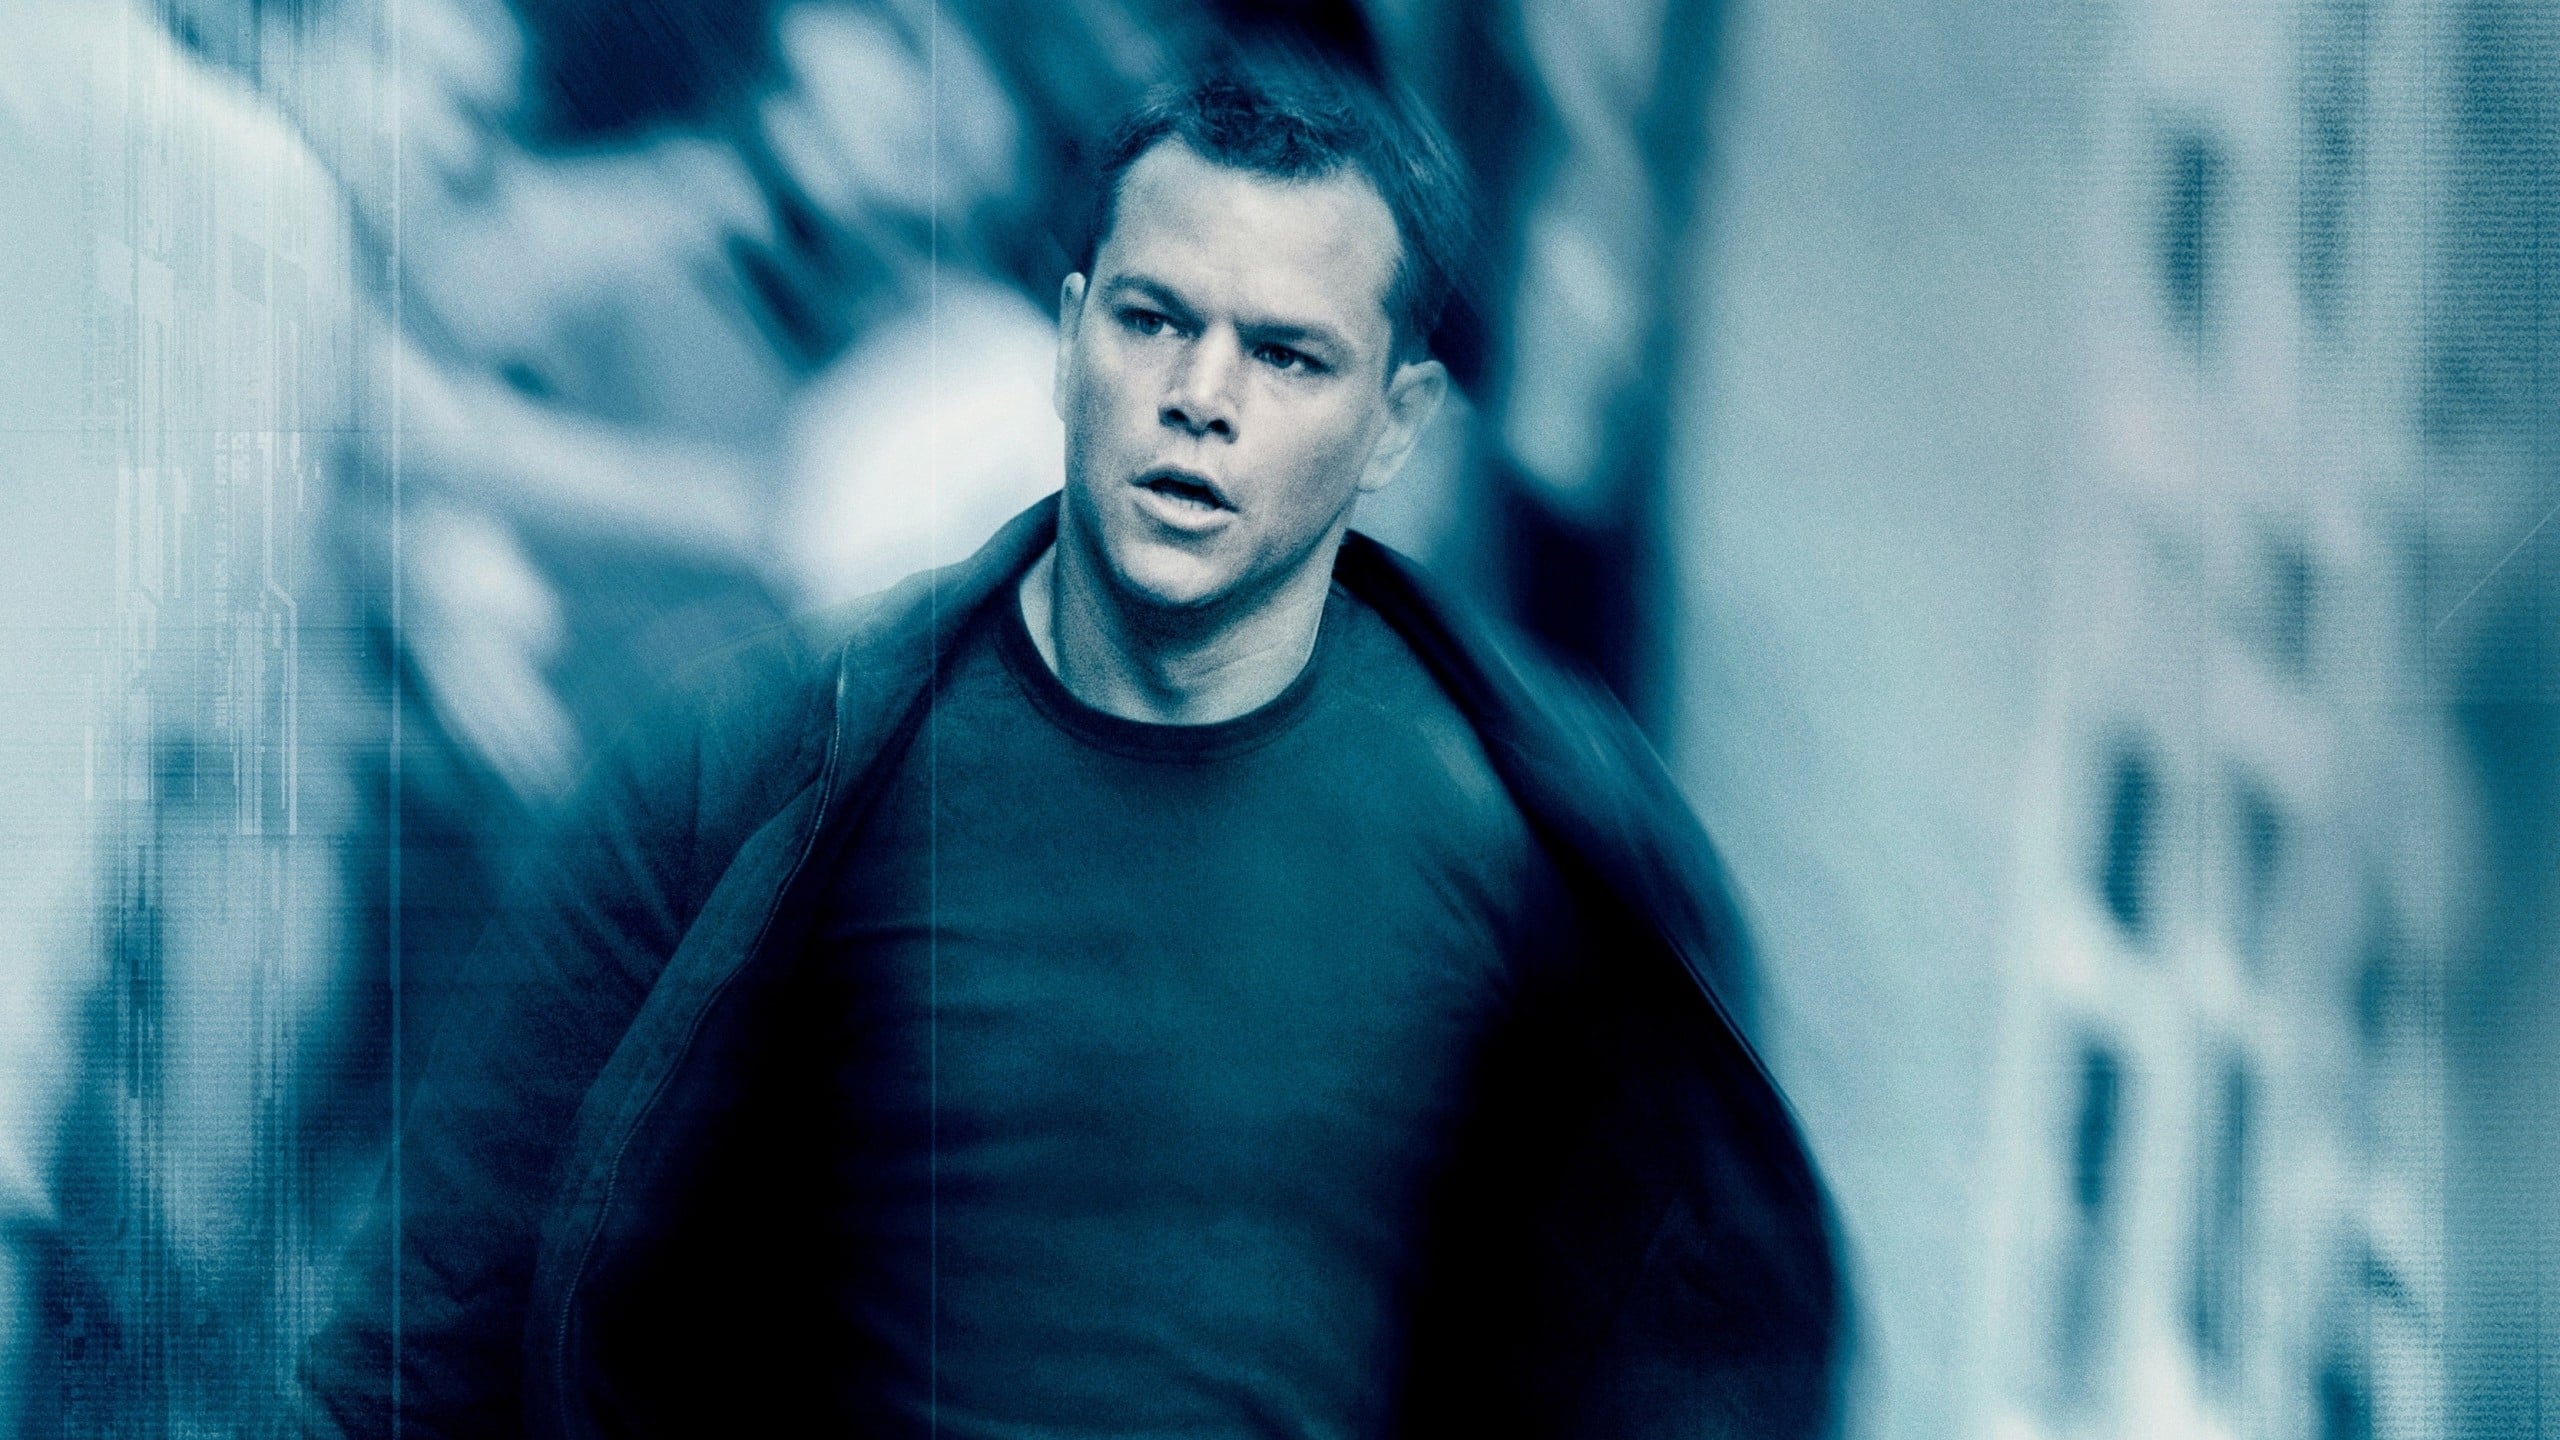 Poster Phim Siêu Điệp Viên: Tối Hậu Thư Của Bourne (The Bourne Ultimatum)